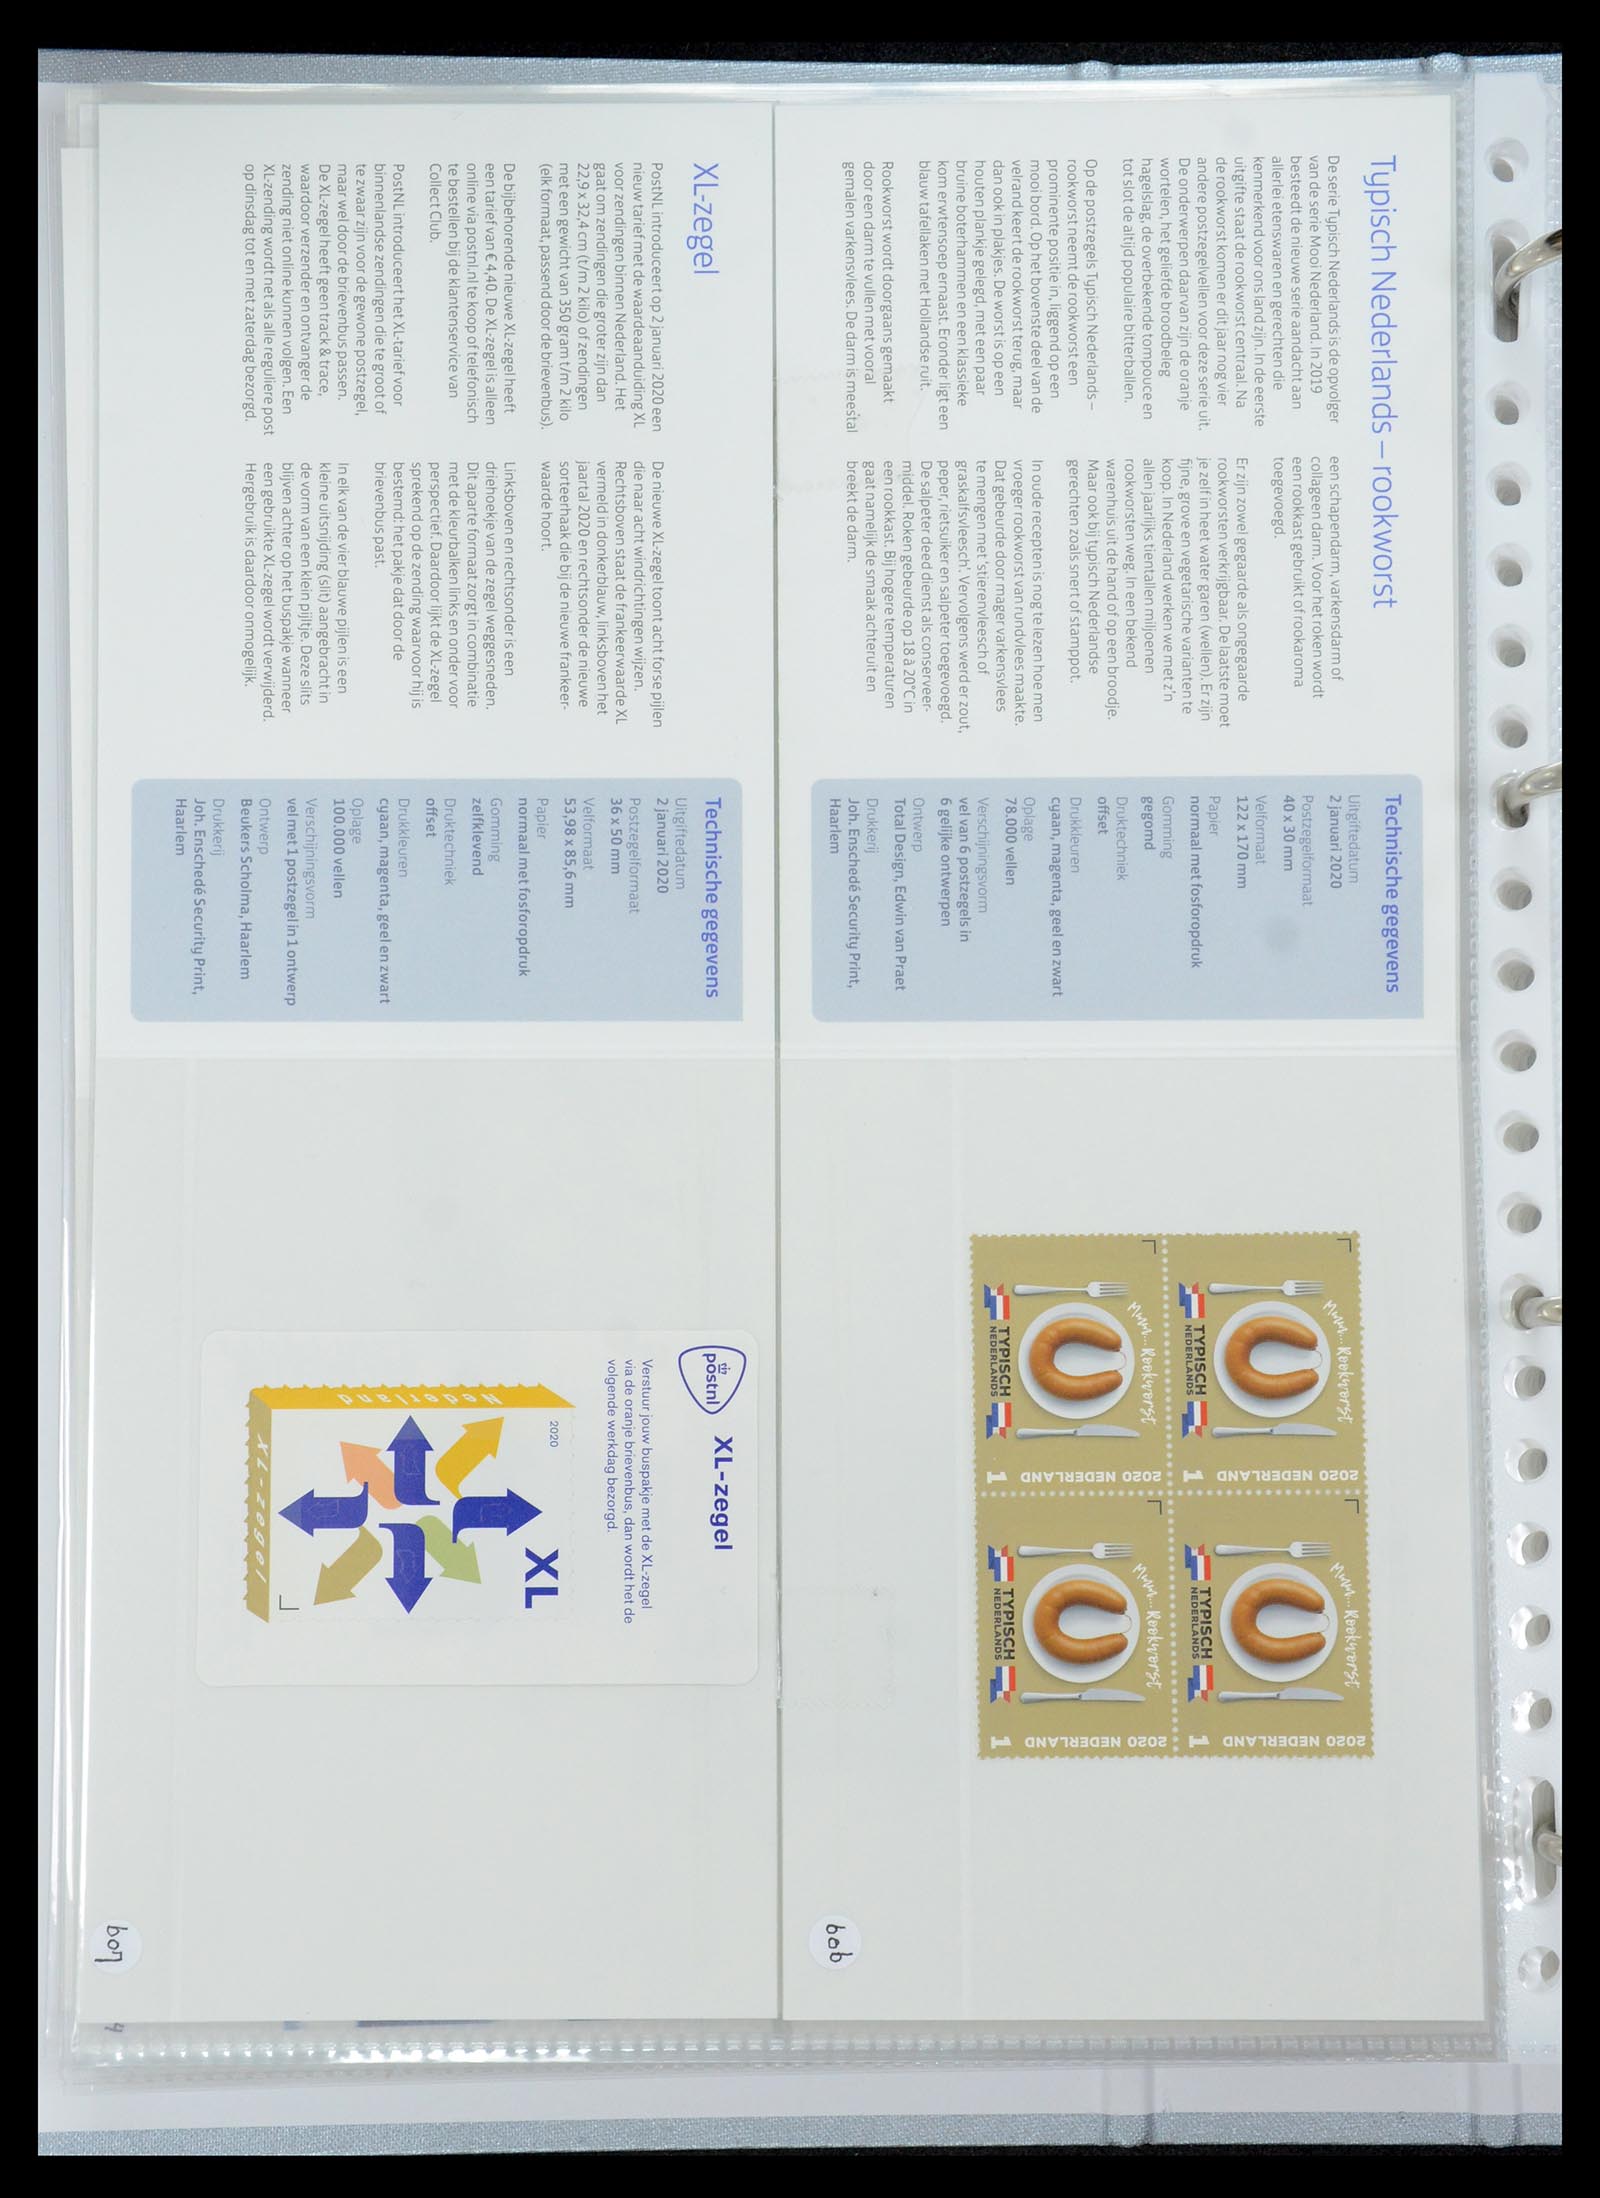 35692 368 - Stamp Collection 35692 Netherlands presentation packs 1982-2021!!